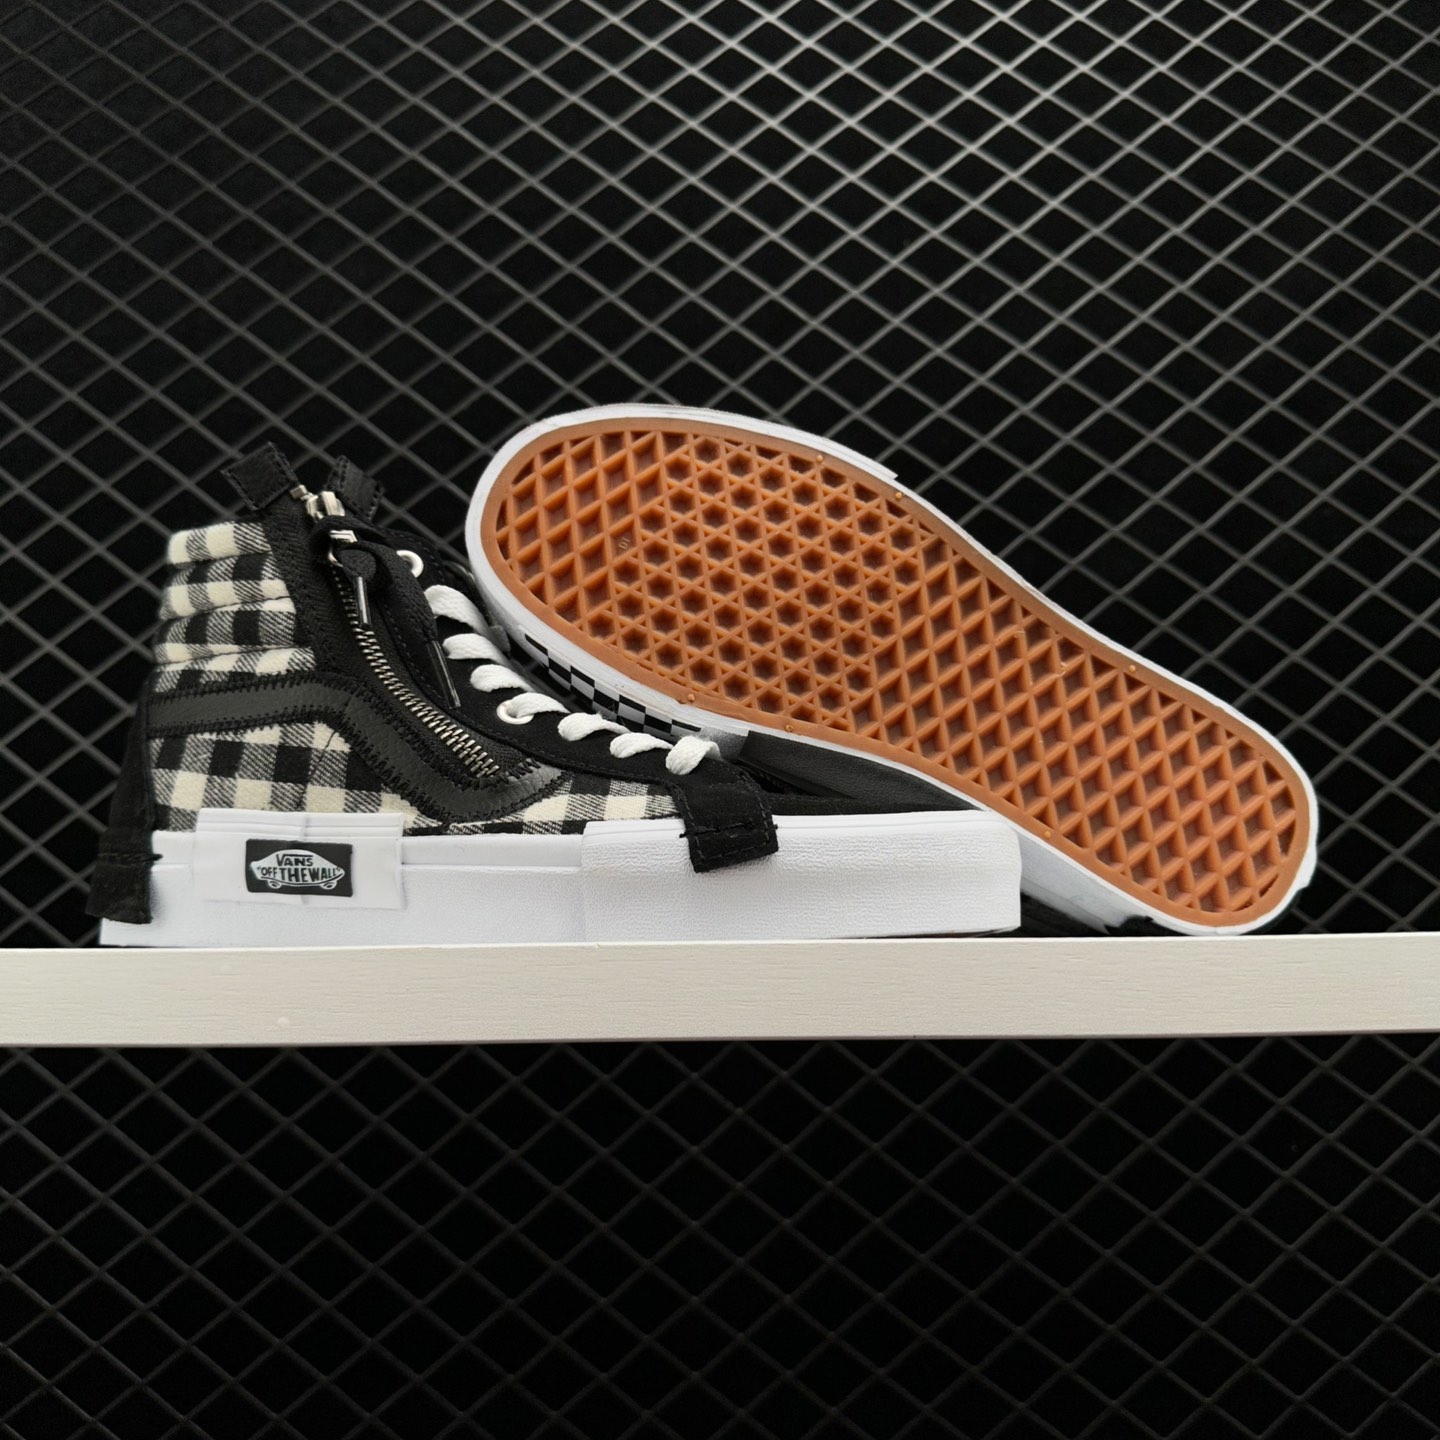 Vans SK8 HI Reissue Cap 'Black White' - Iconic Skateboarding Sneakers